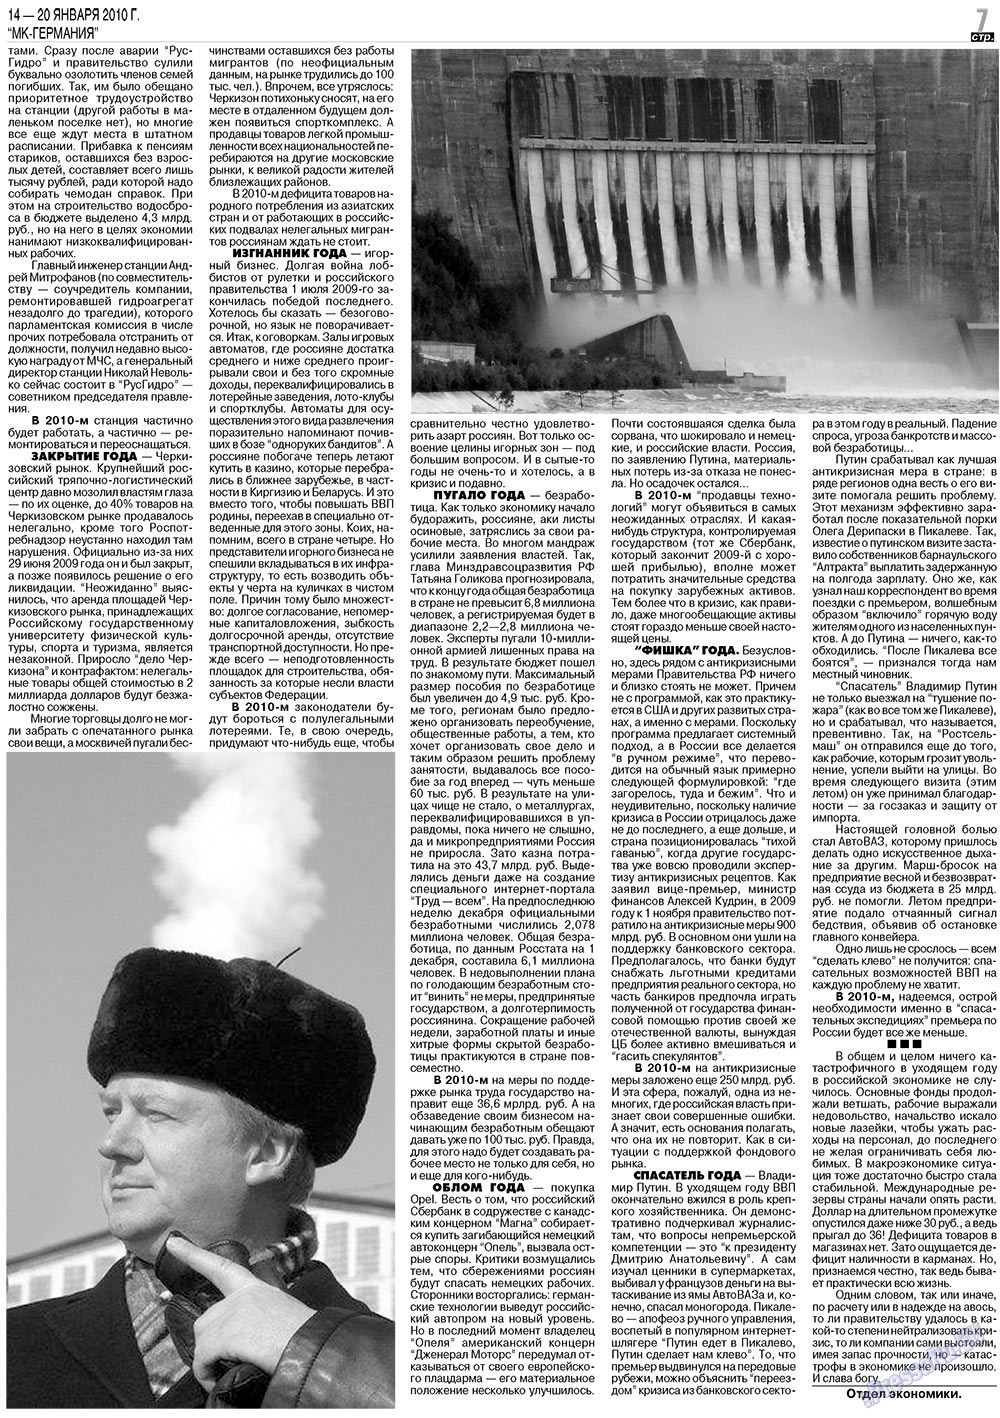 МК-Германия (газета). 2010 год, номер 3, стр. 7